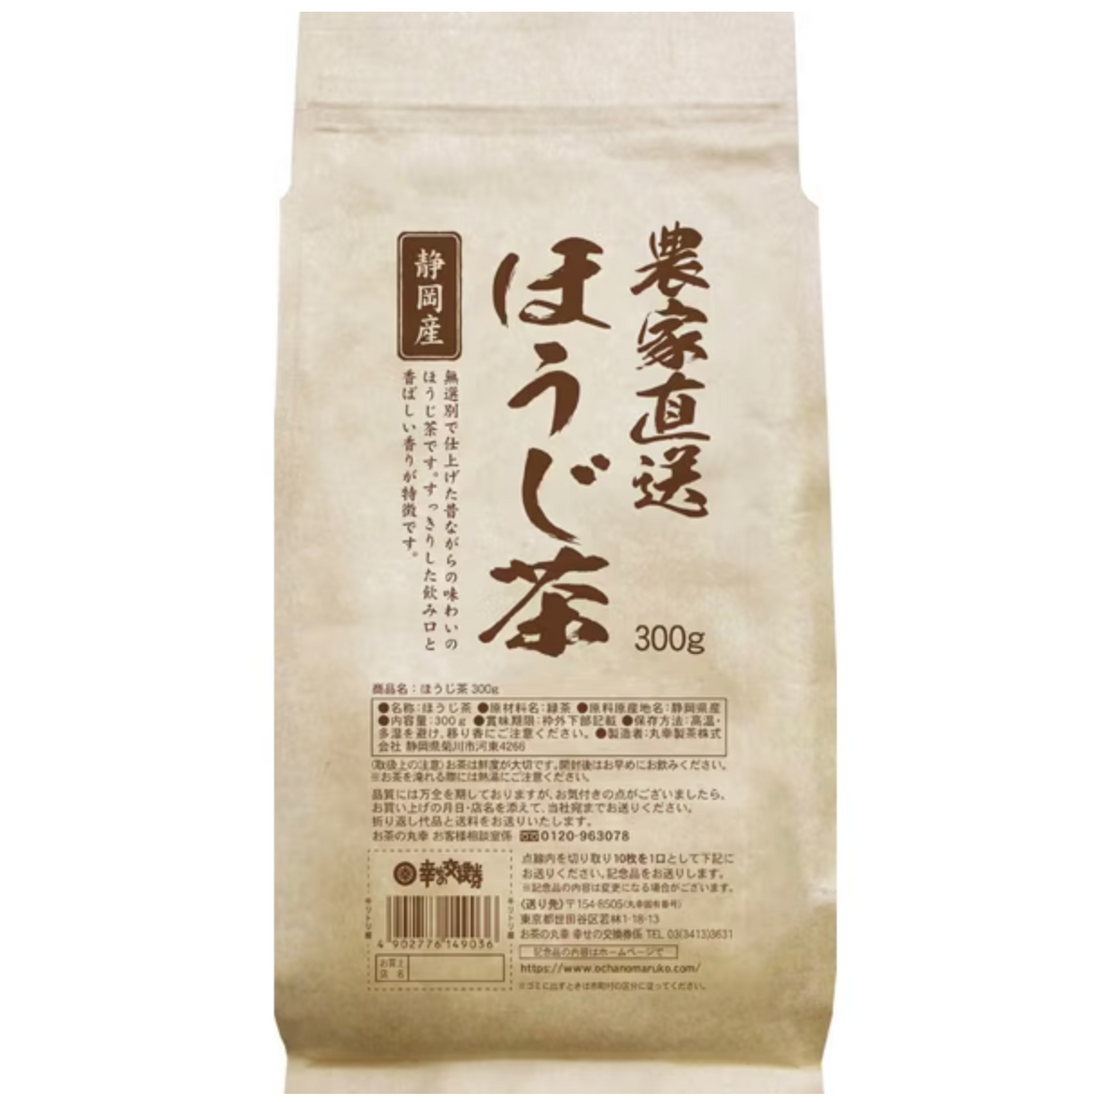 Ochanomaruko Shizuoka roasted green tea delivered directly from farmers 300g